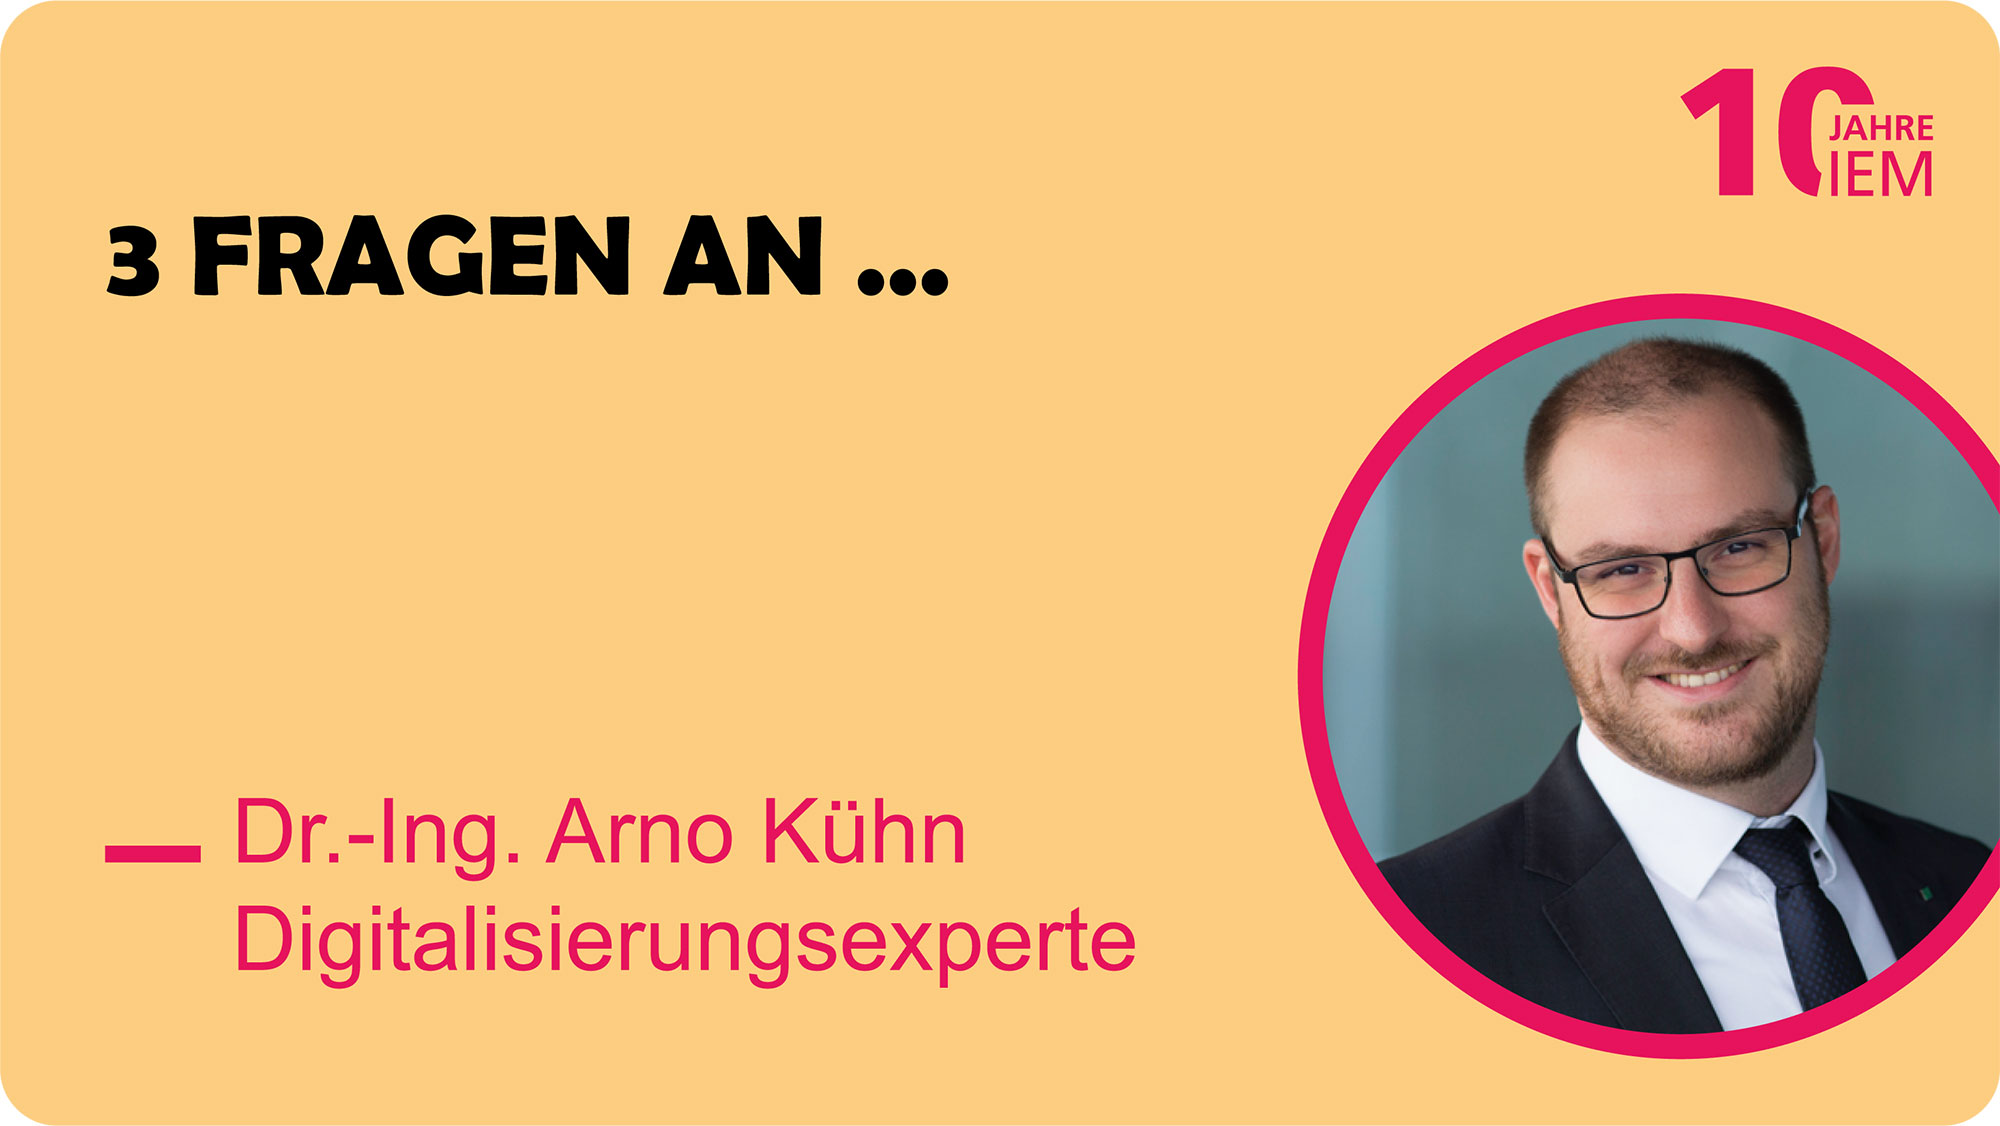 Portrait von Arno Kühn vor einem gelben Hintergrund. Links daneben steht die Überschrift "3 Fragen an.." mit entsprechendem Namen.